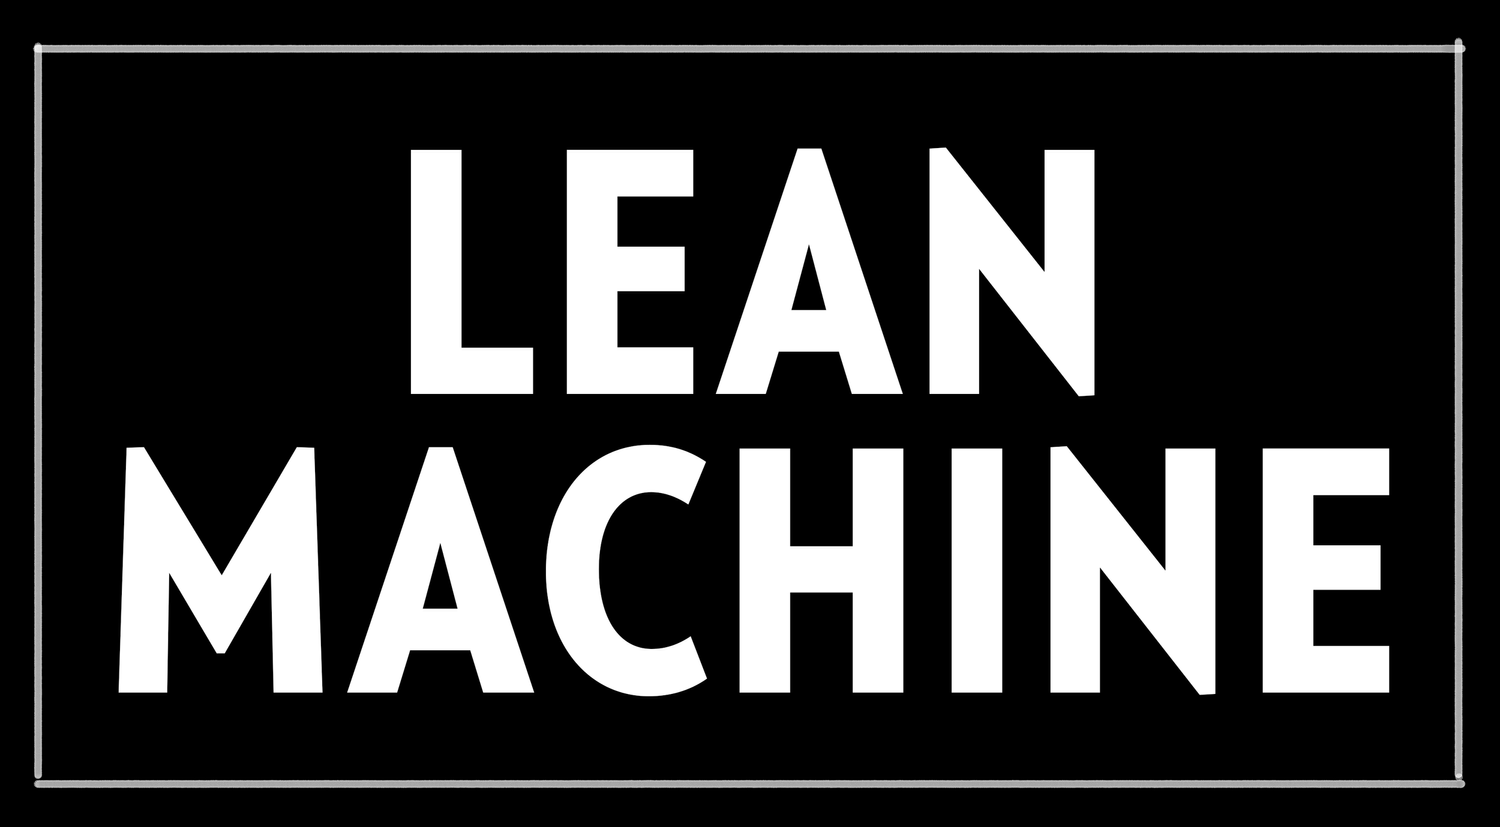 Lean Machine